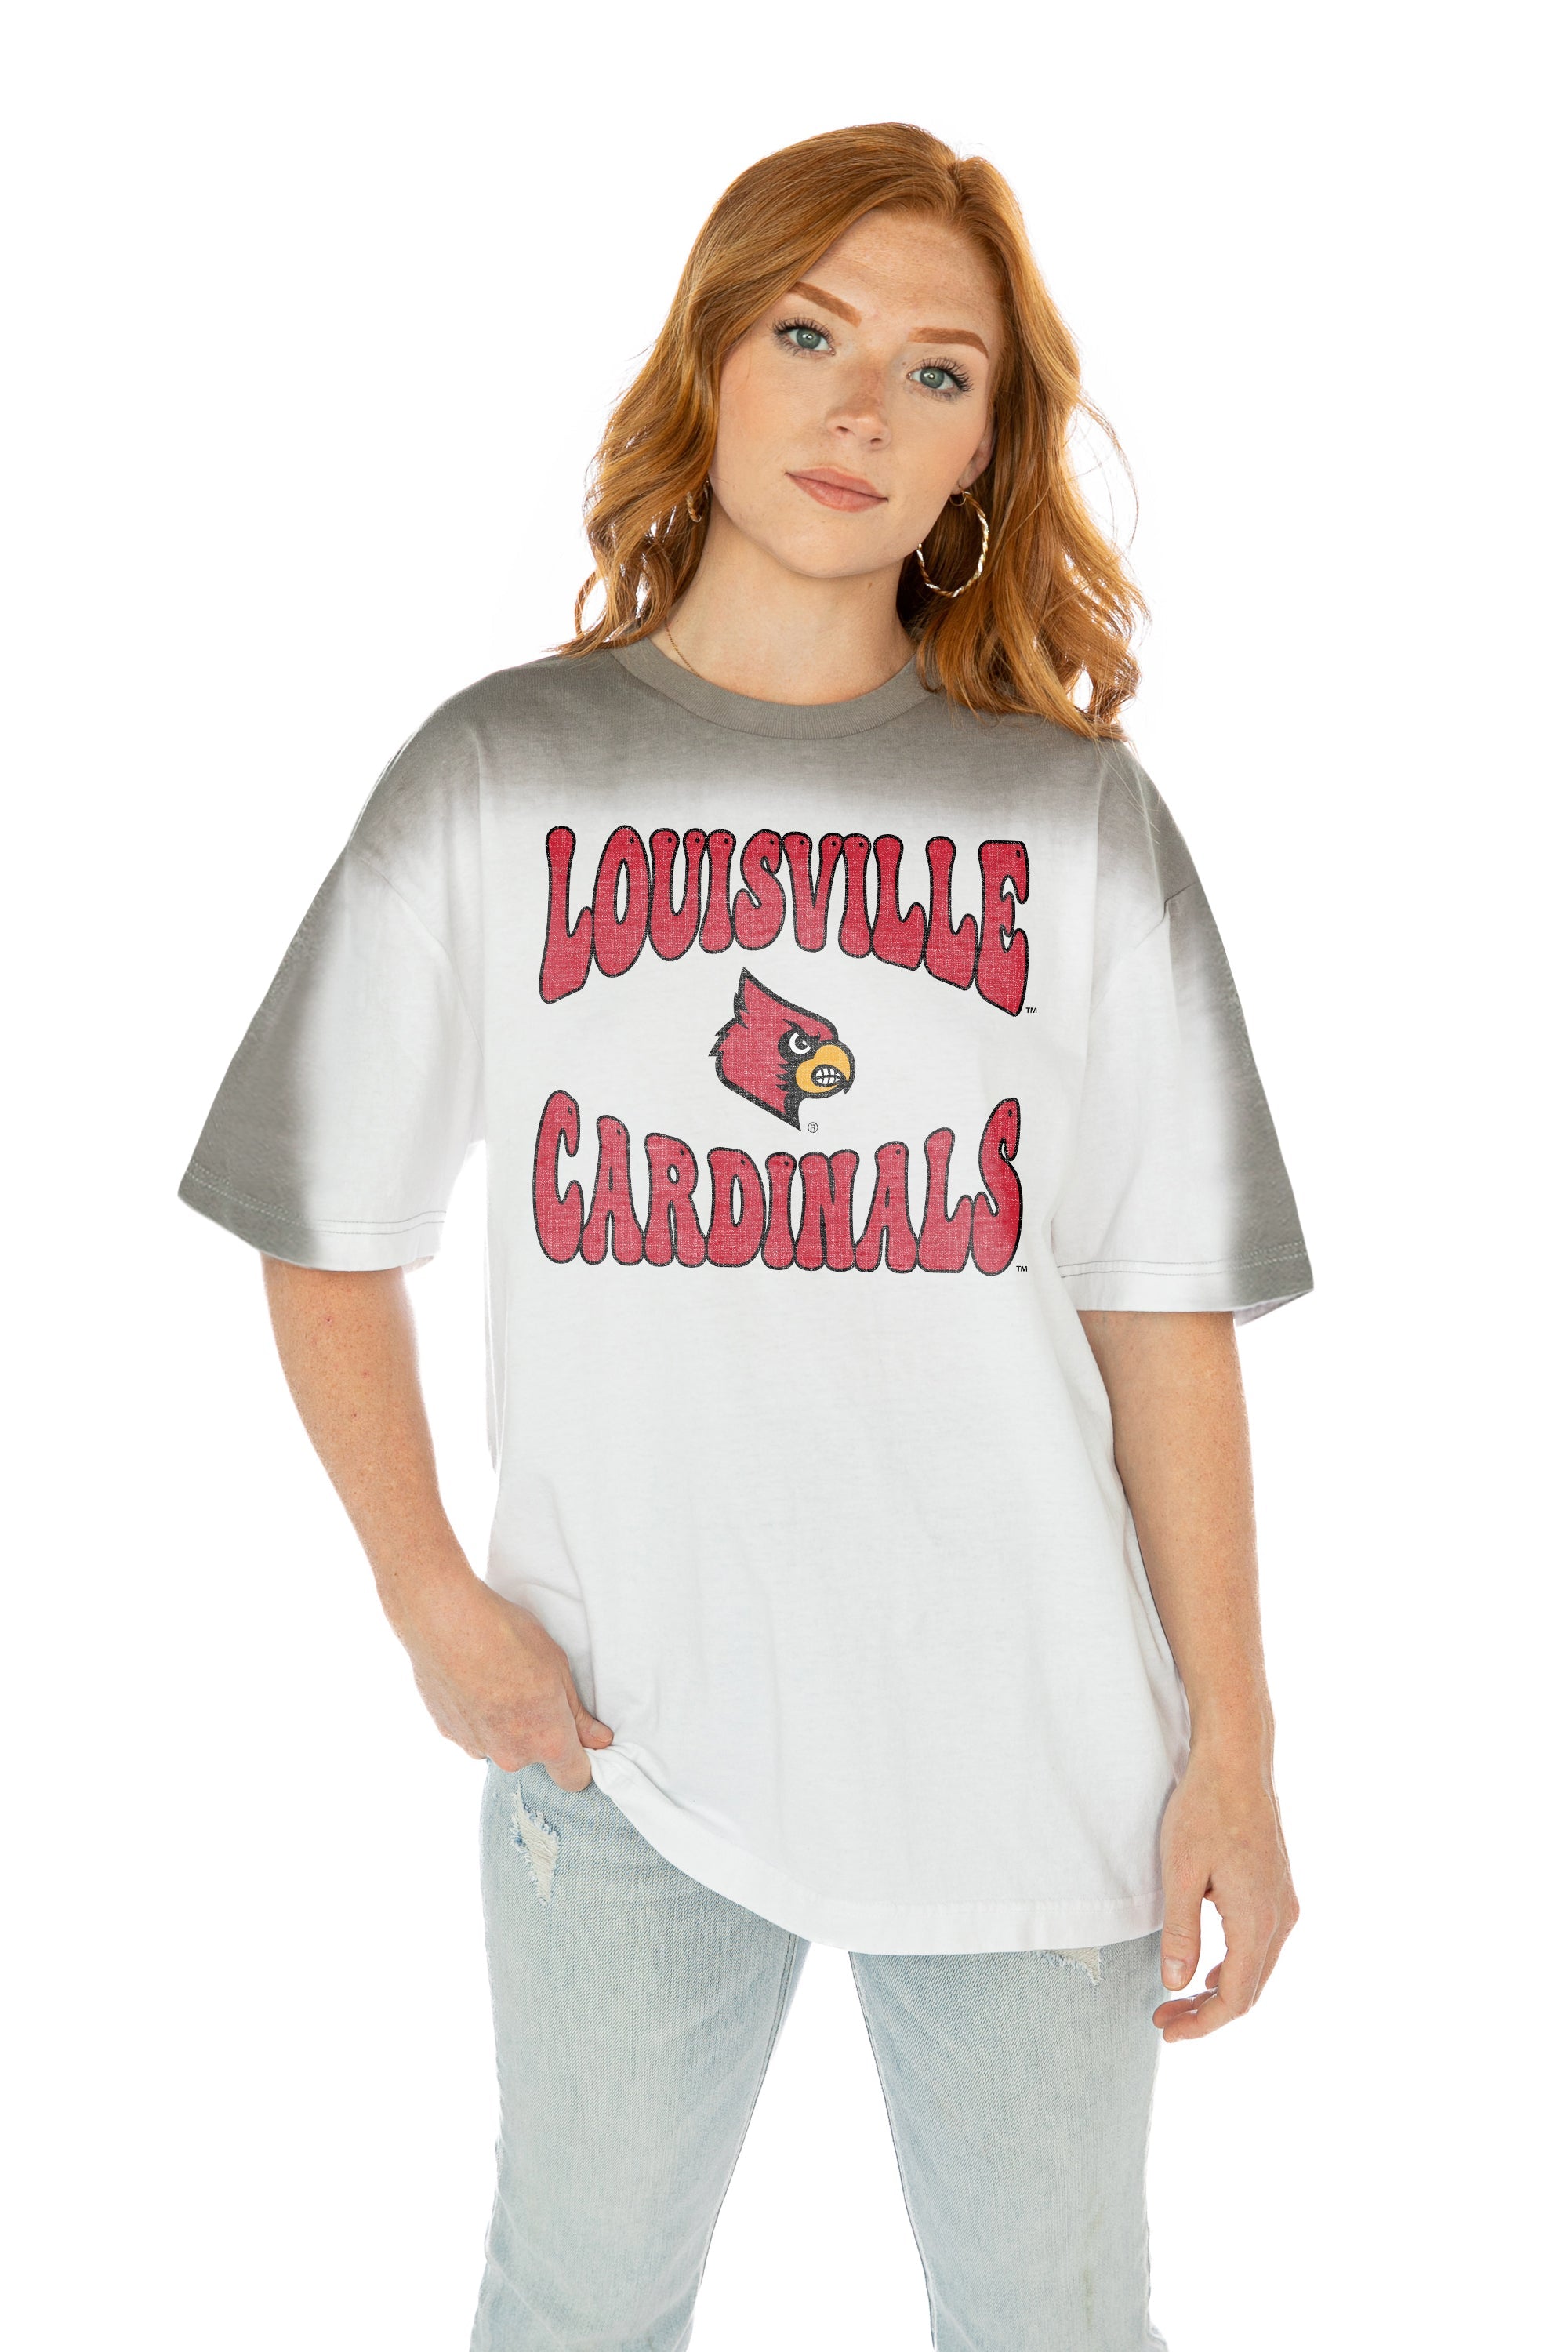 NCAA Louisville Cardinals Women's Crew Neck Fleece Sweatshirt - S